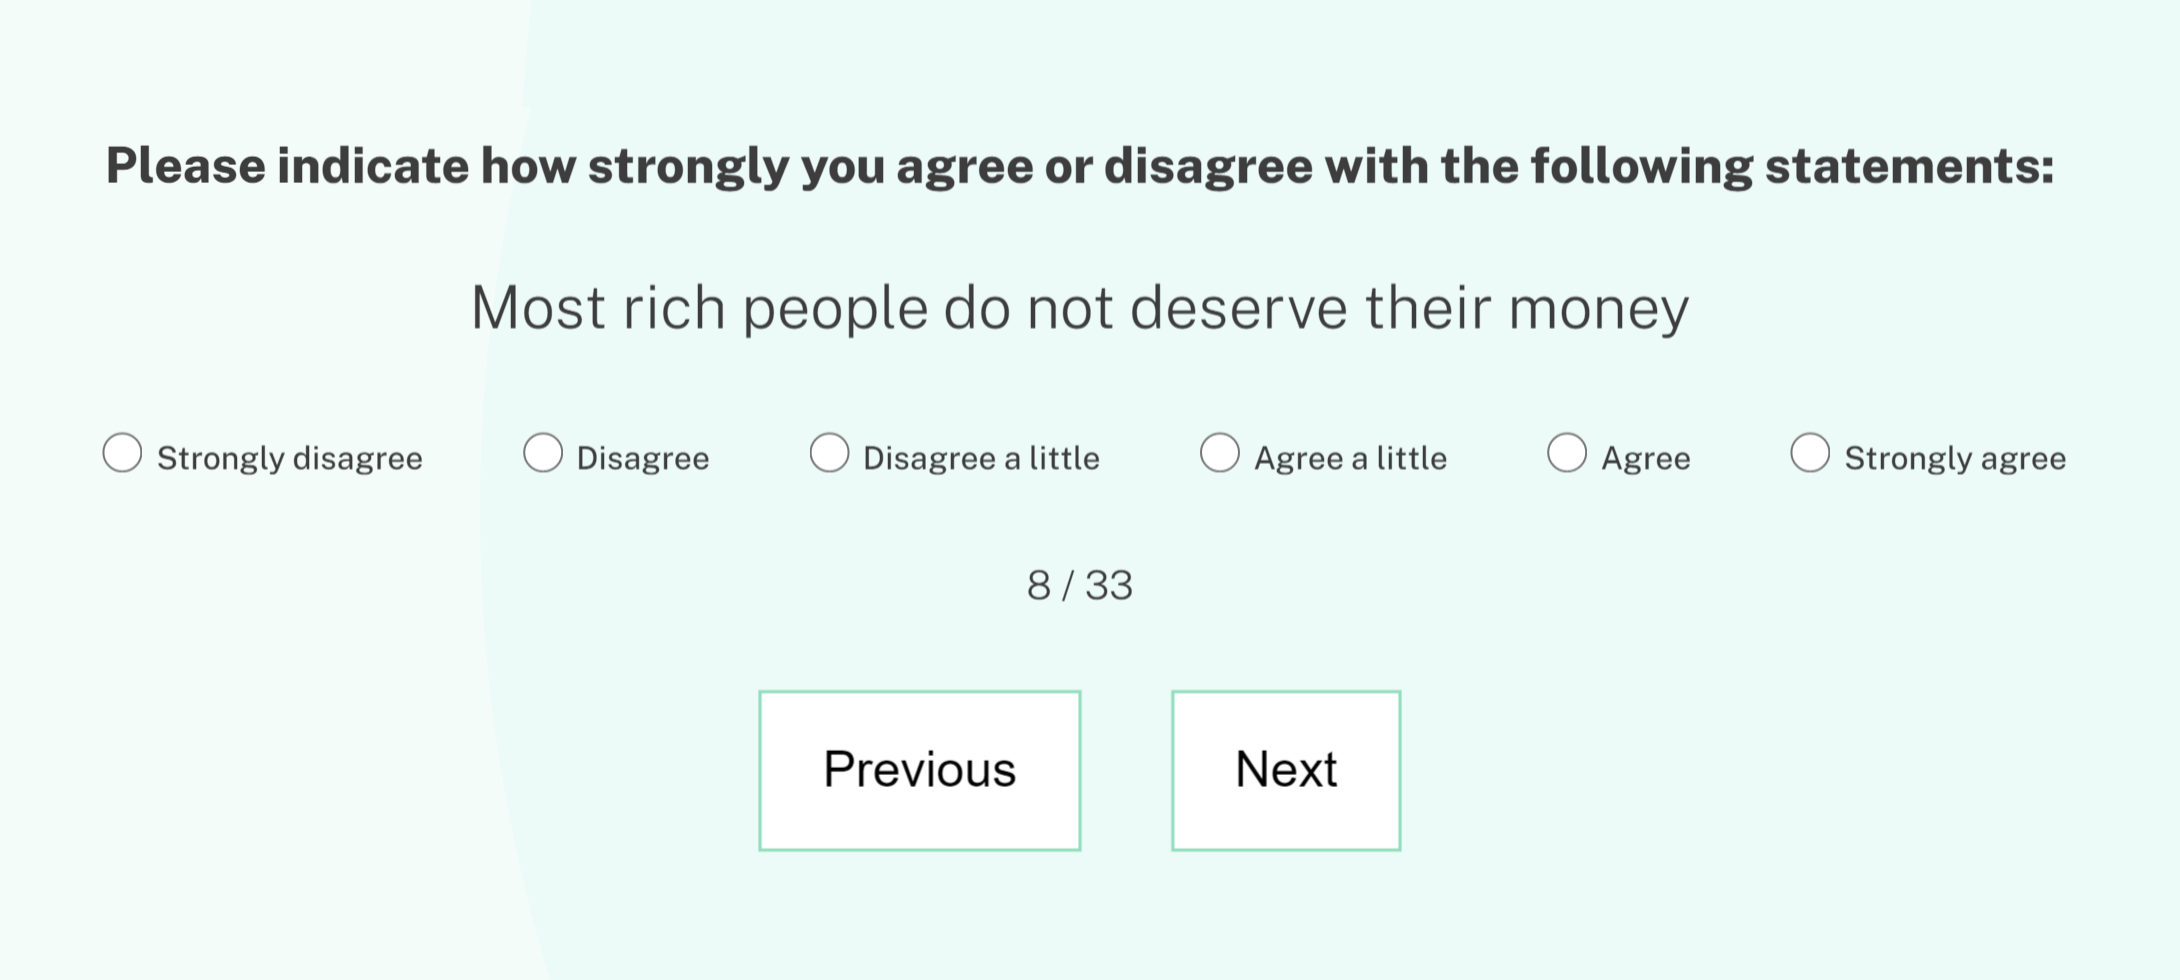 Одно из утверждений теста: большинство богатых людей не заслуживают собственных денег. Насколько вы с ним согласны?